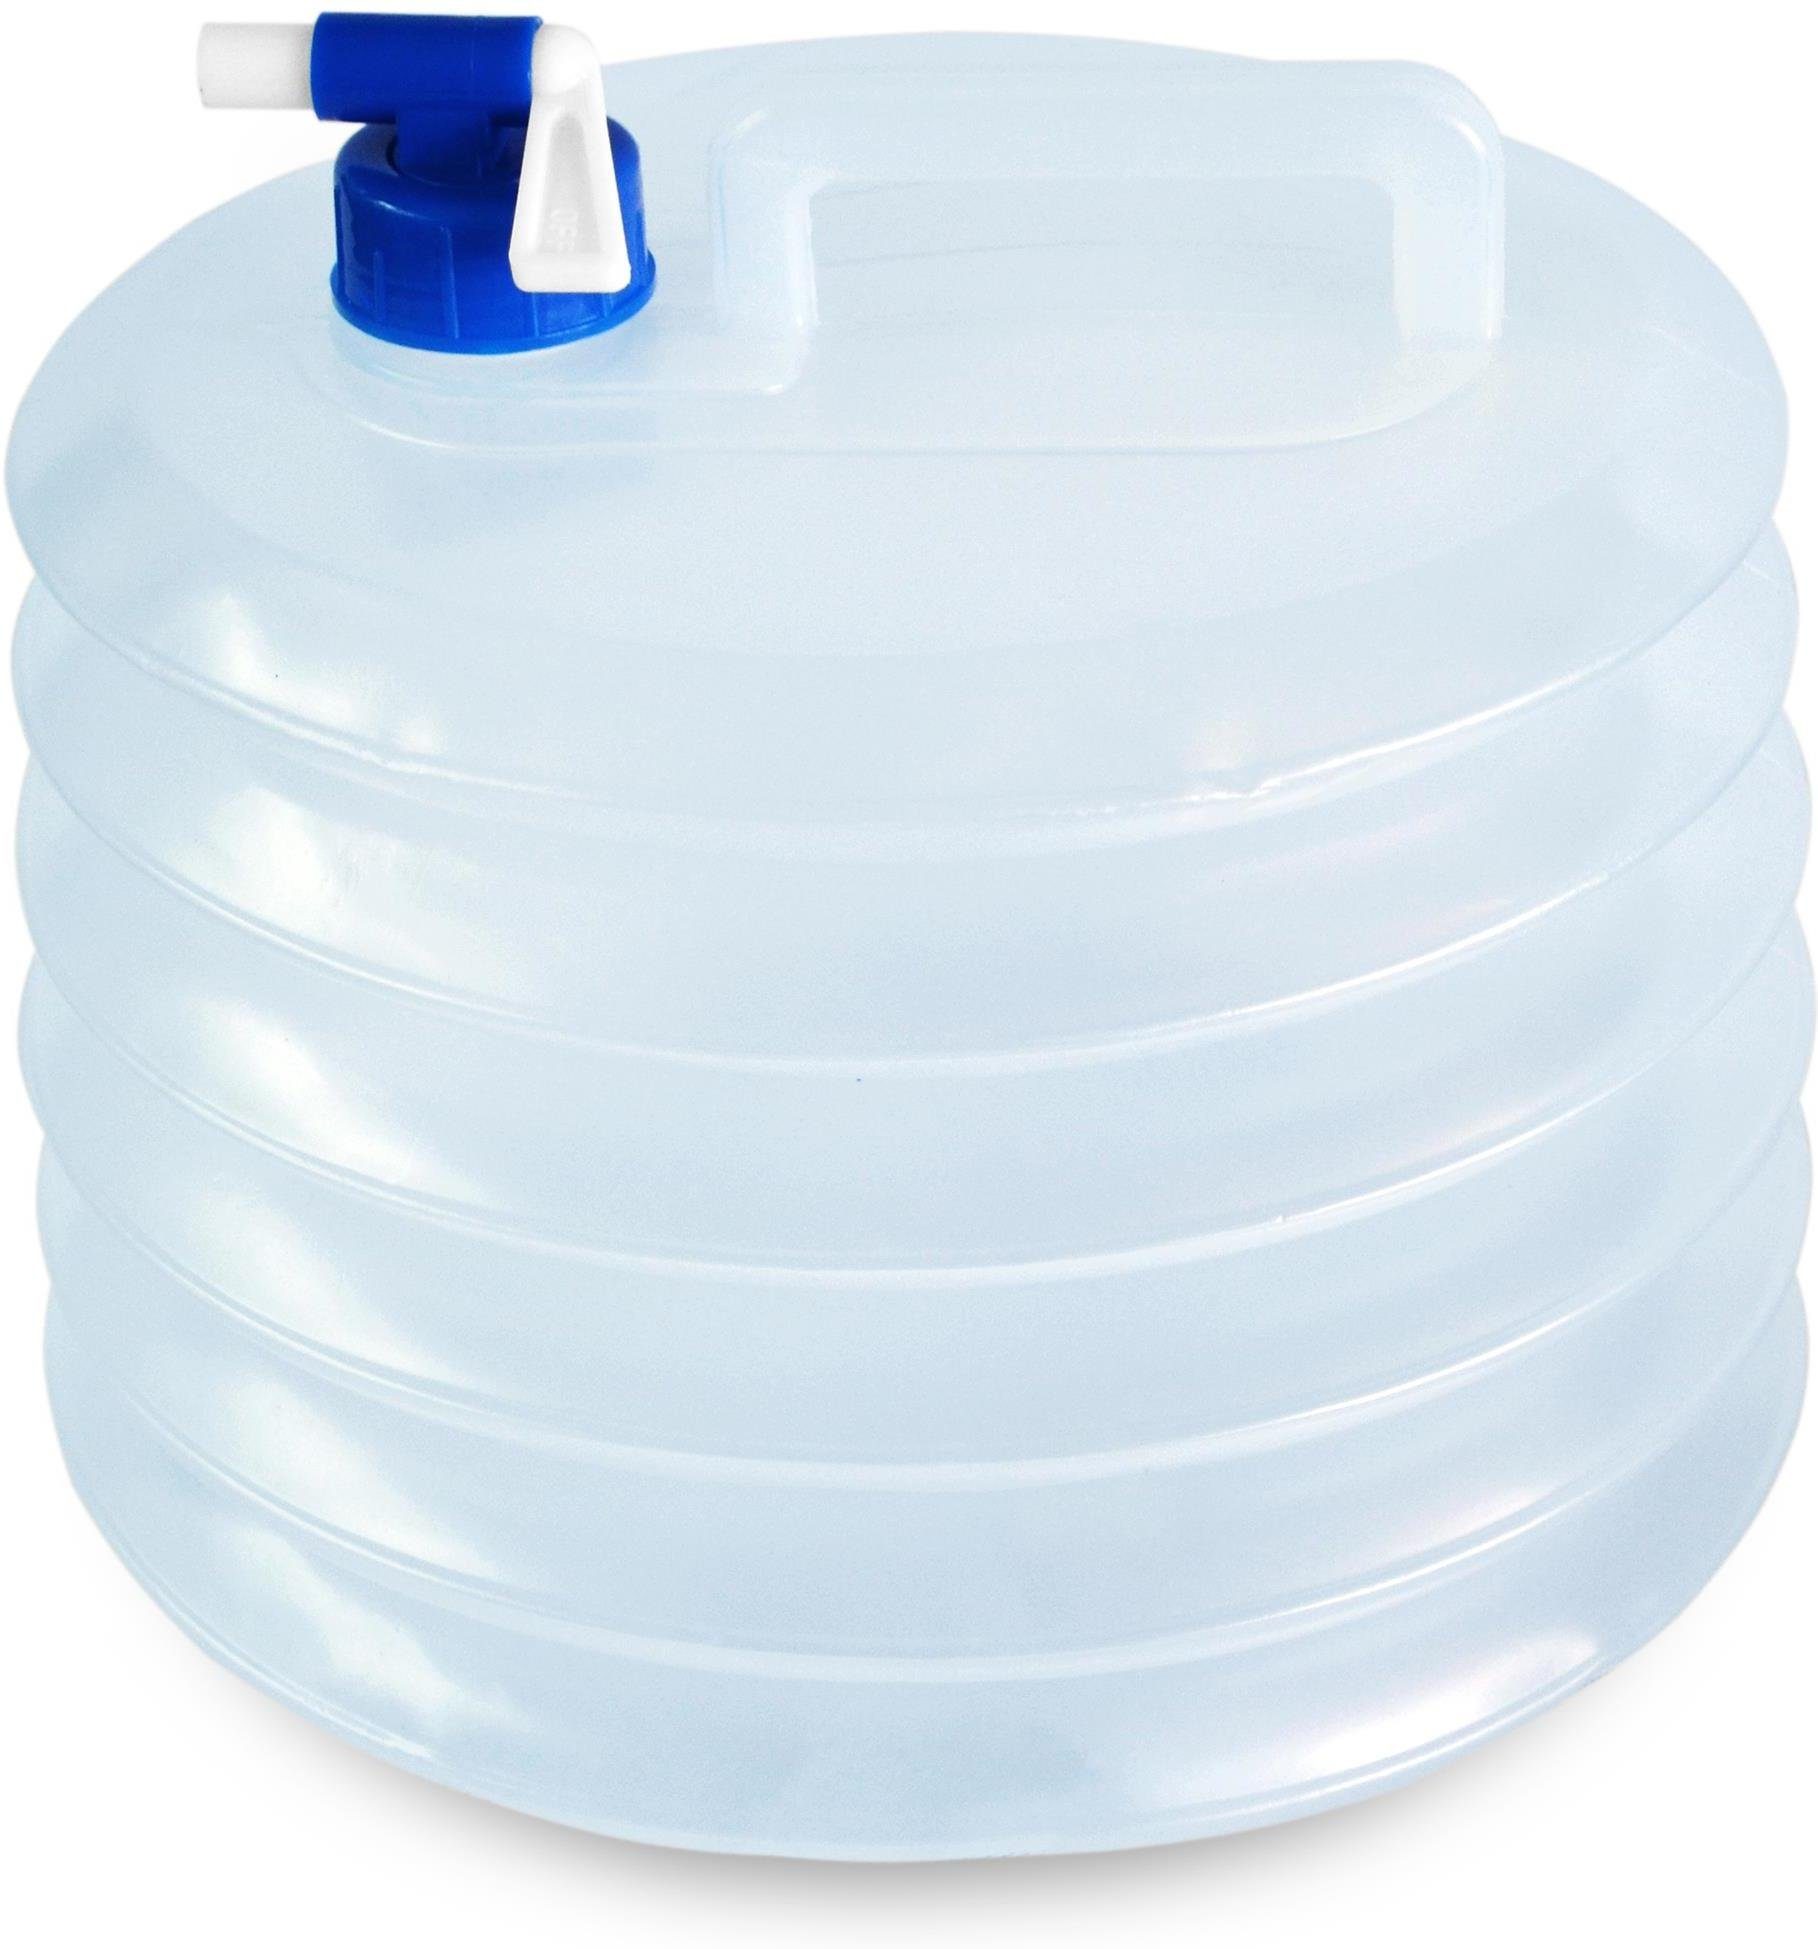 normani Kanister Faltkanister 10 Liter Yuancan (1 St), Faltbarer Falteimer  Wasserkanister mit Hahn Wasserbehälter Trinkwasserkanister -  Lebensmittelecht